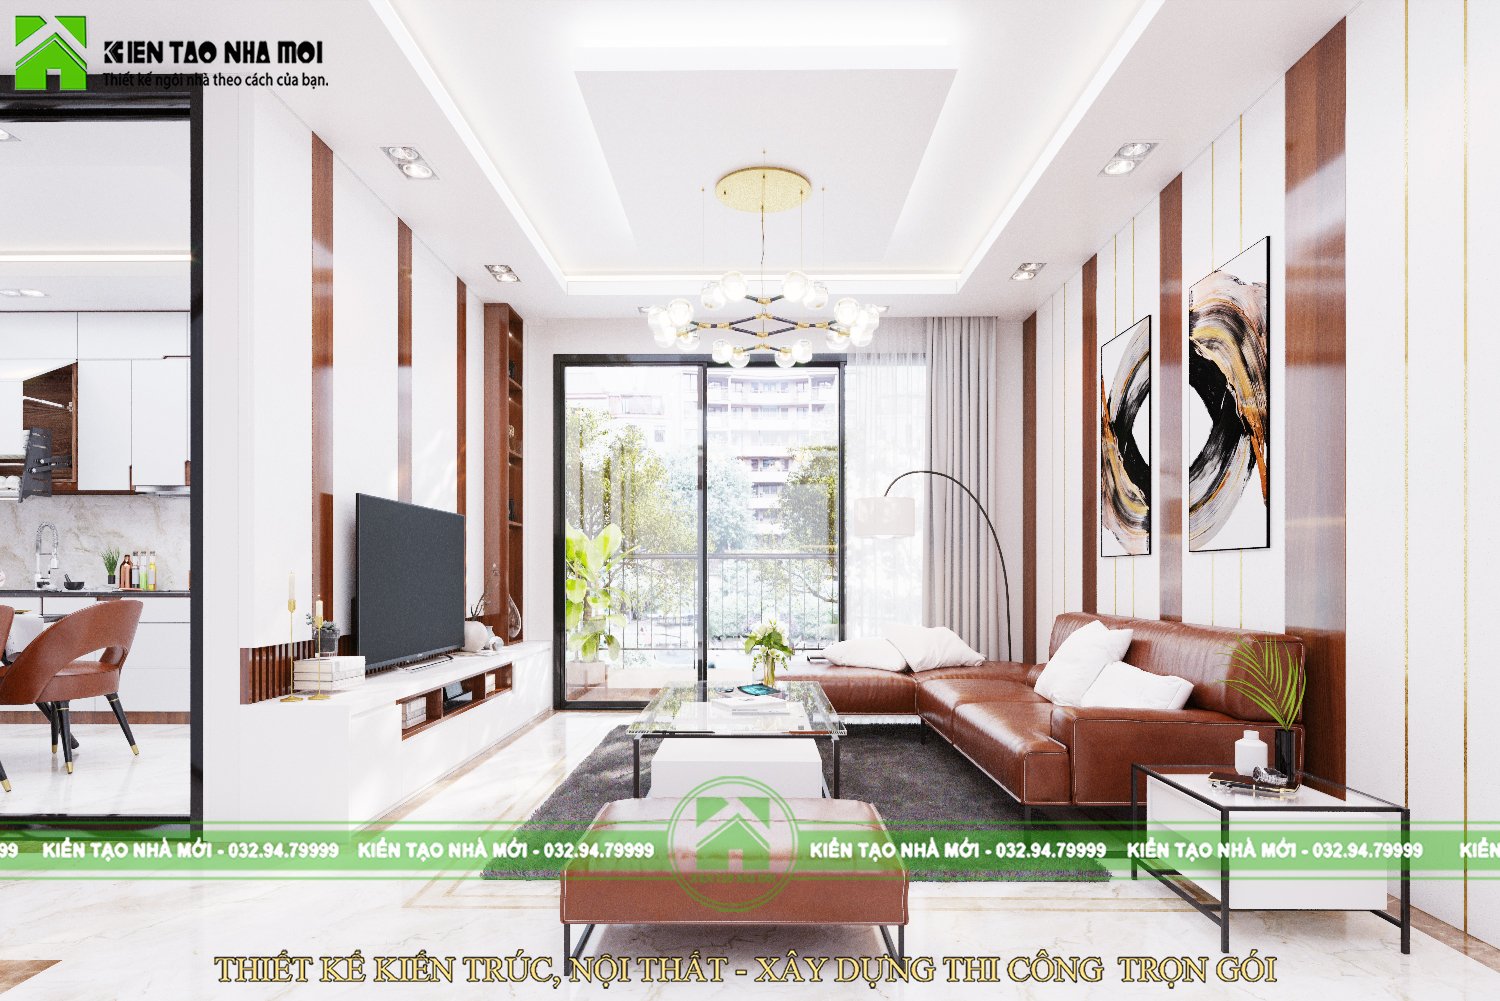 Thiết kế nội thất Biệt Thự tại Thái Nguyên Thiết kế nội thất nhà ở gia đình hiện đại tại Thái Nguyên 1587915120 2